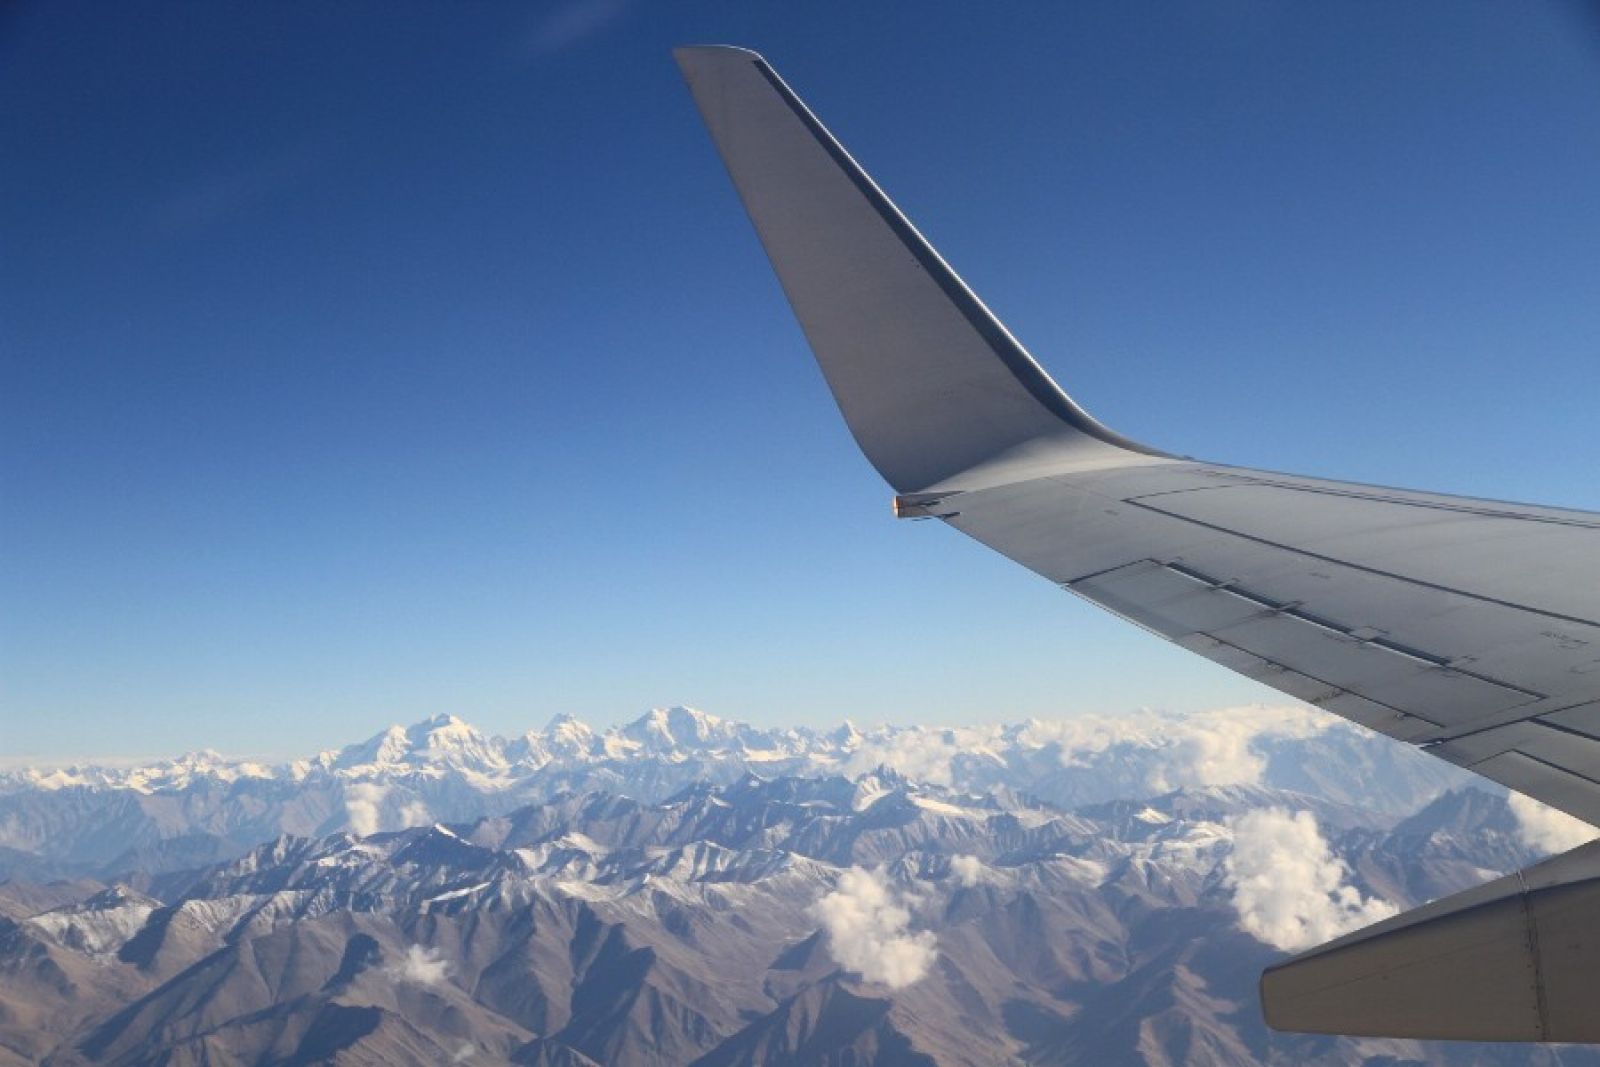 Aus dem Flieger hat man einen großartigen Blick auf die Berge Ladakhs